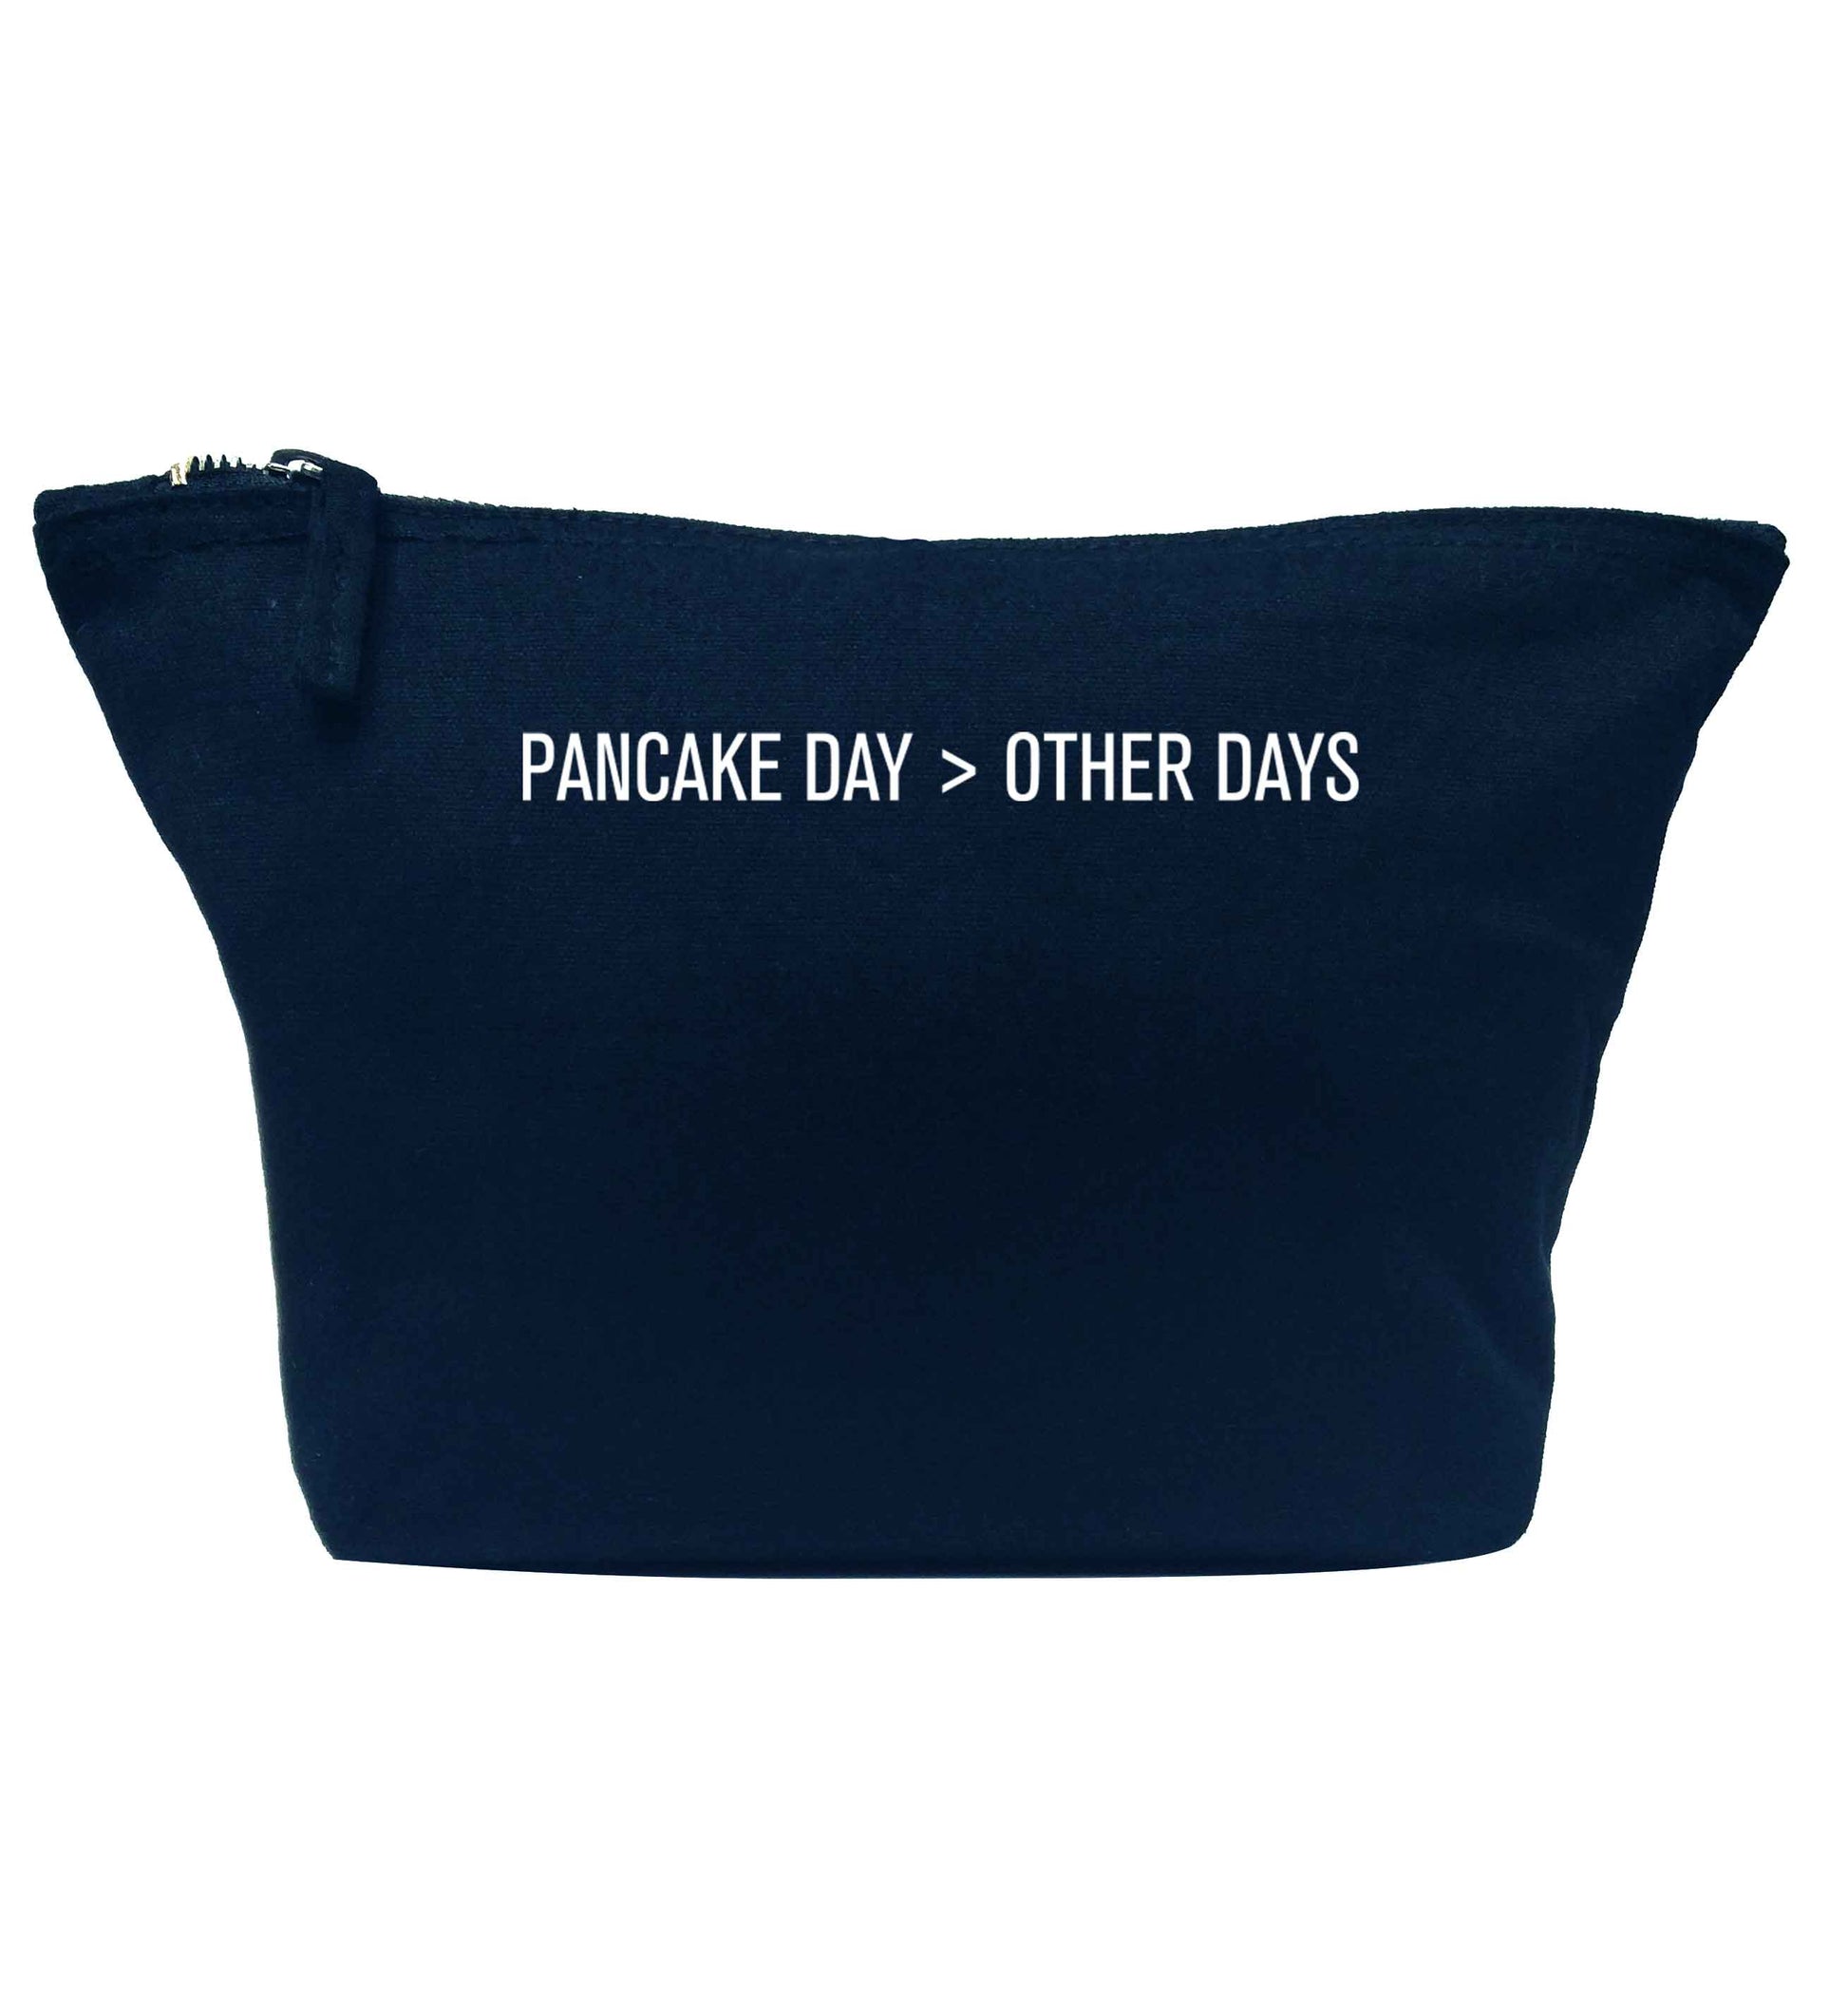 Pancake day > other days navy makeup bag